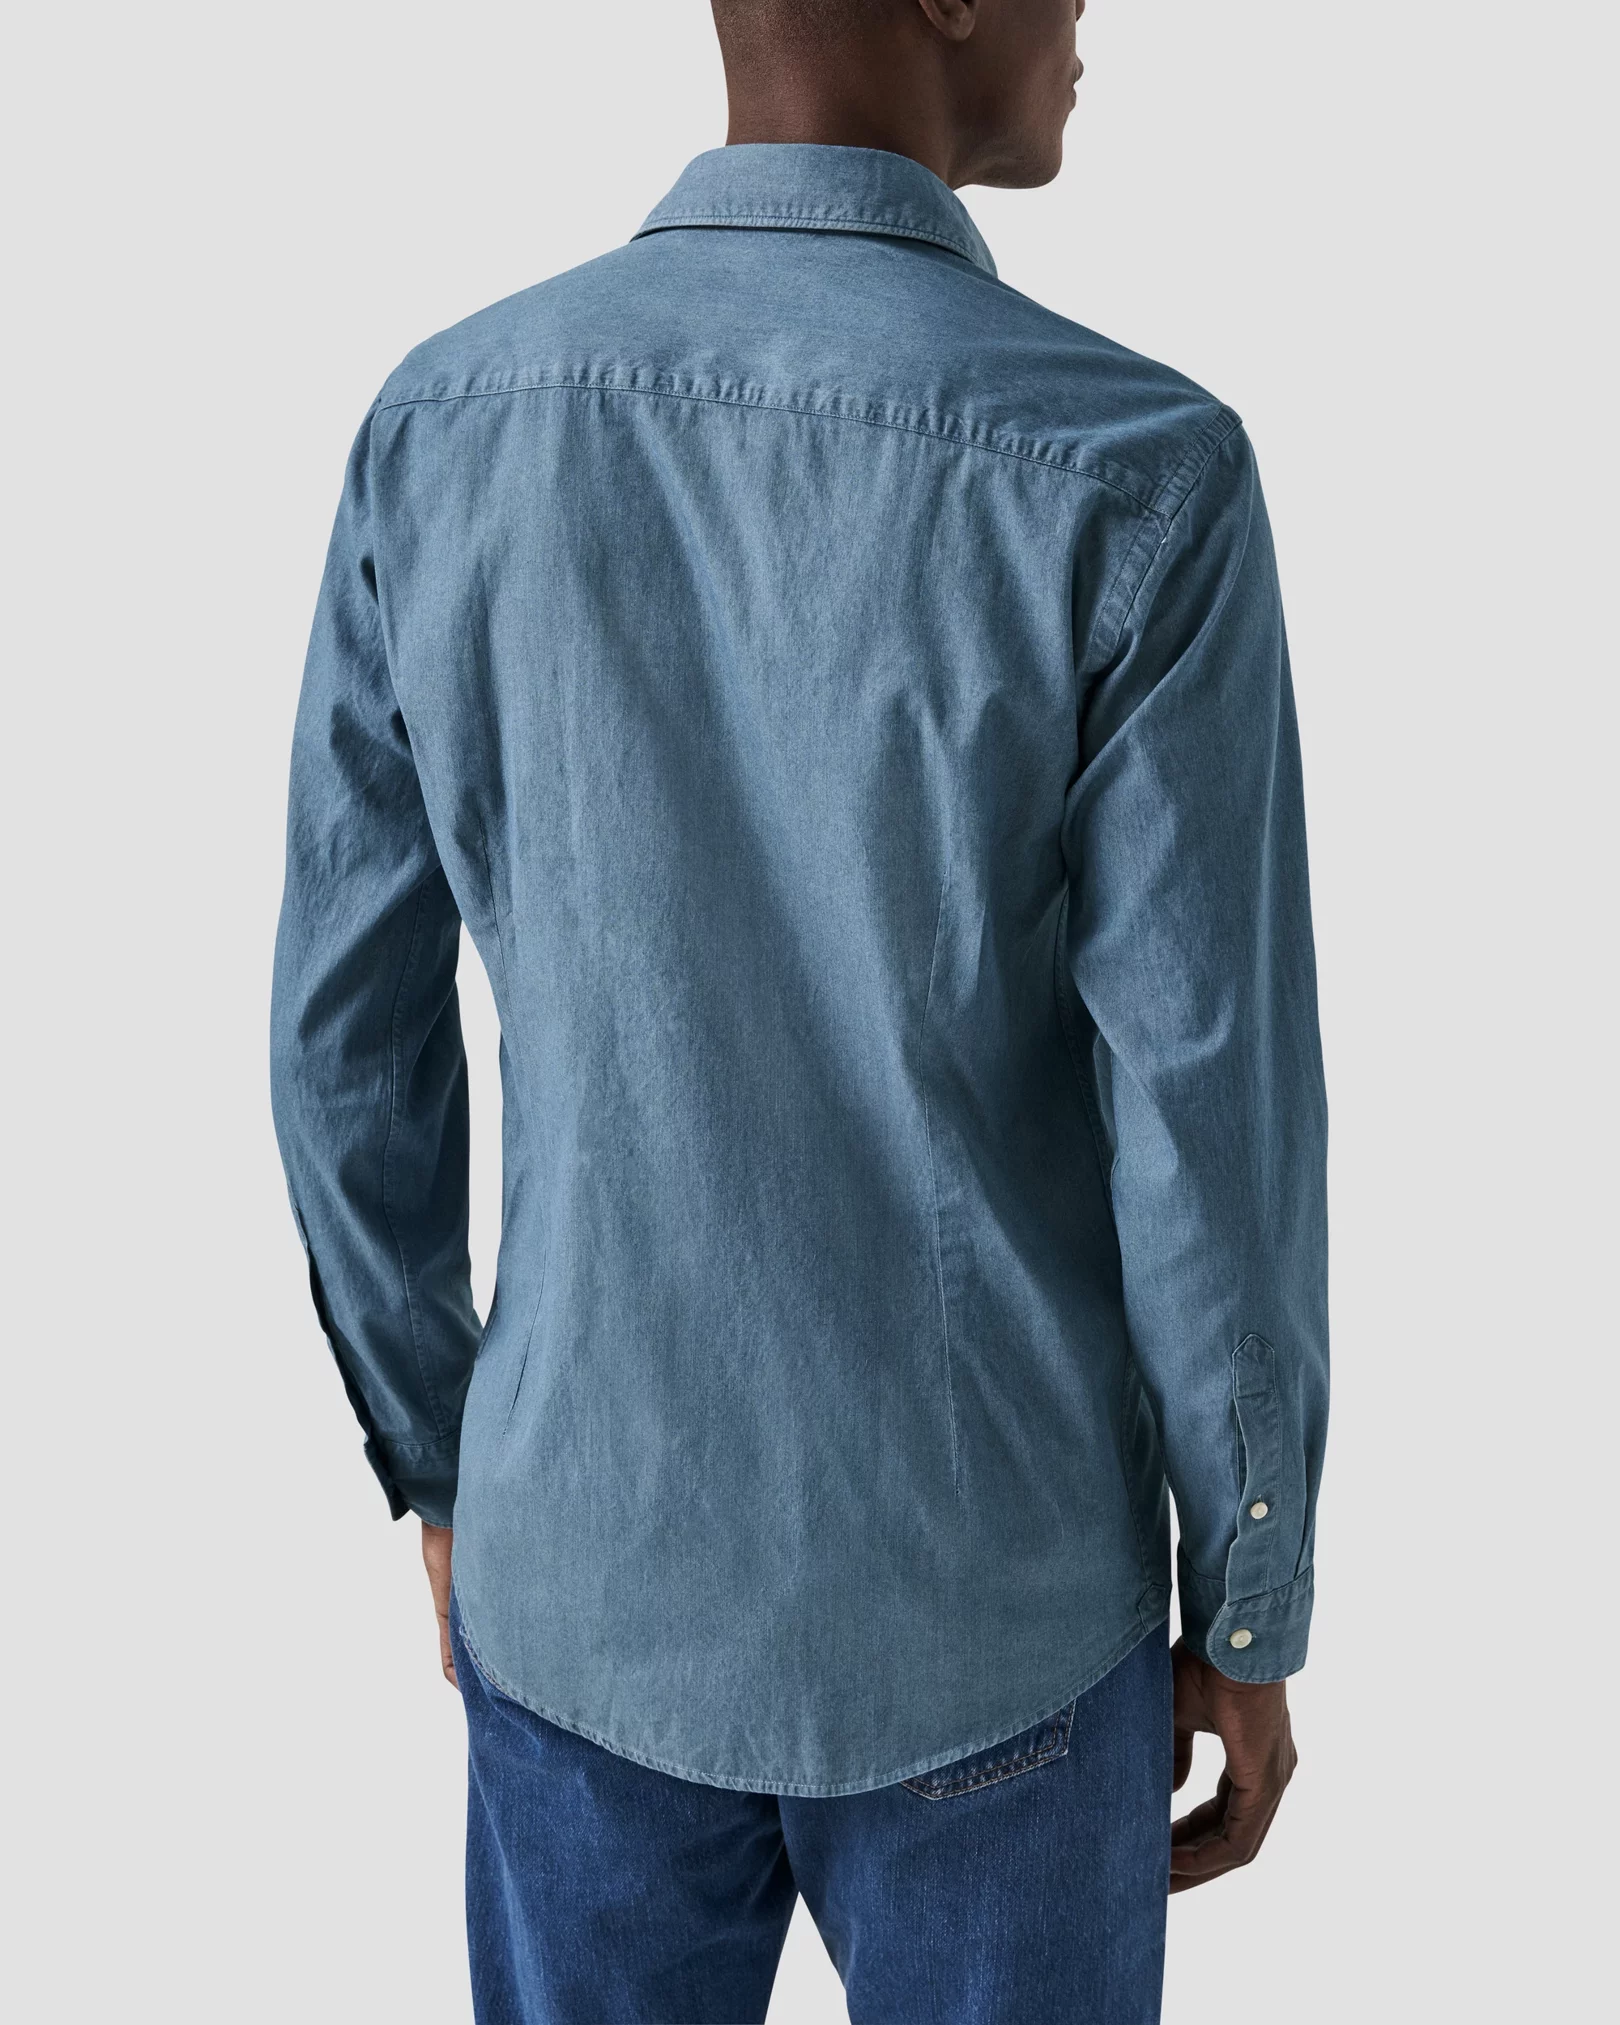 Eton - dark blue lightweight denim shirt